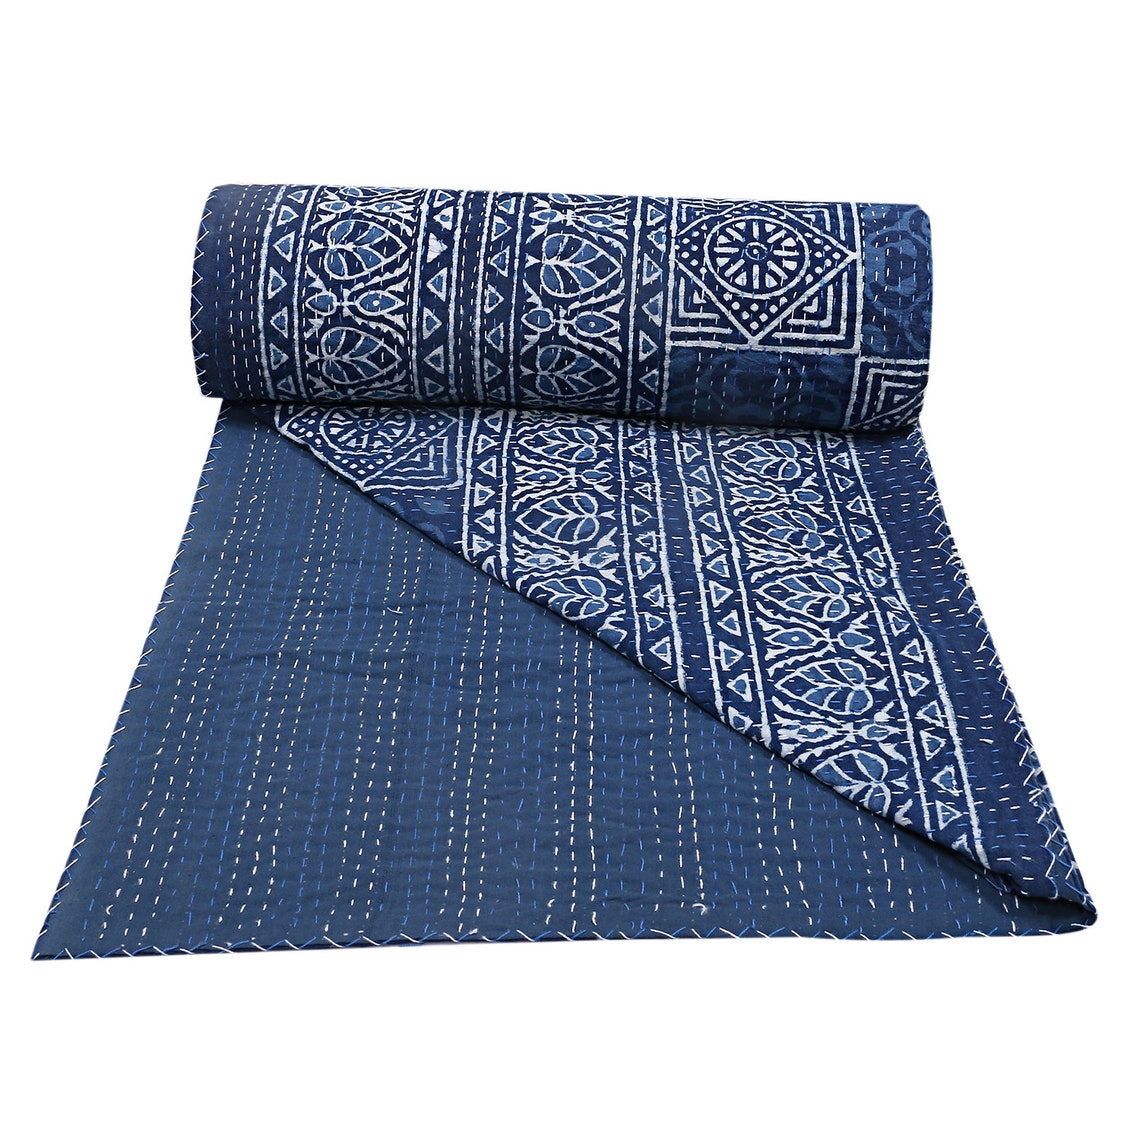 Reversible Indigo Blue Printed Floral Kantha Bedcover Blanket Etsy